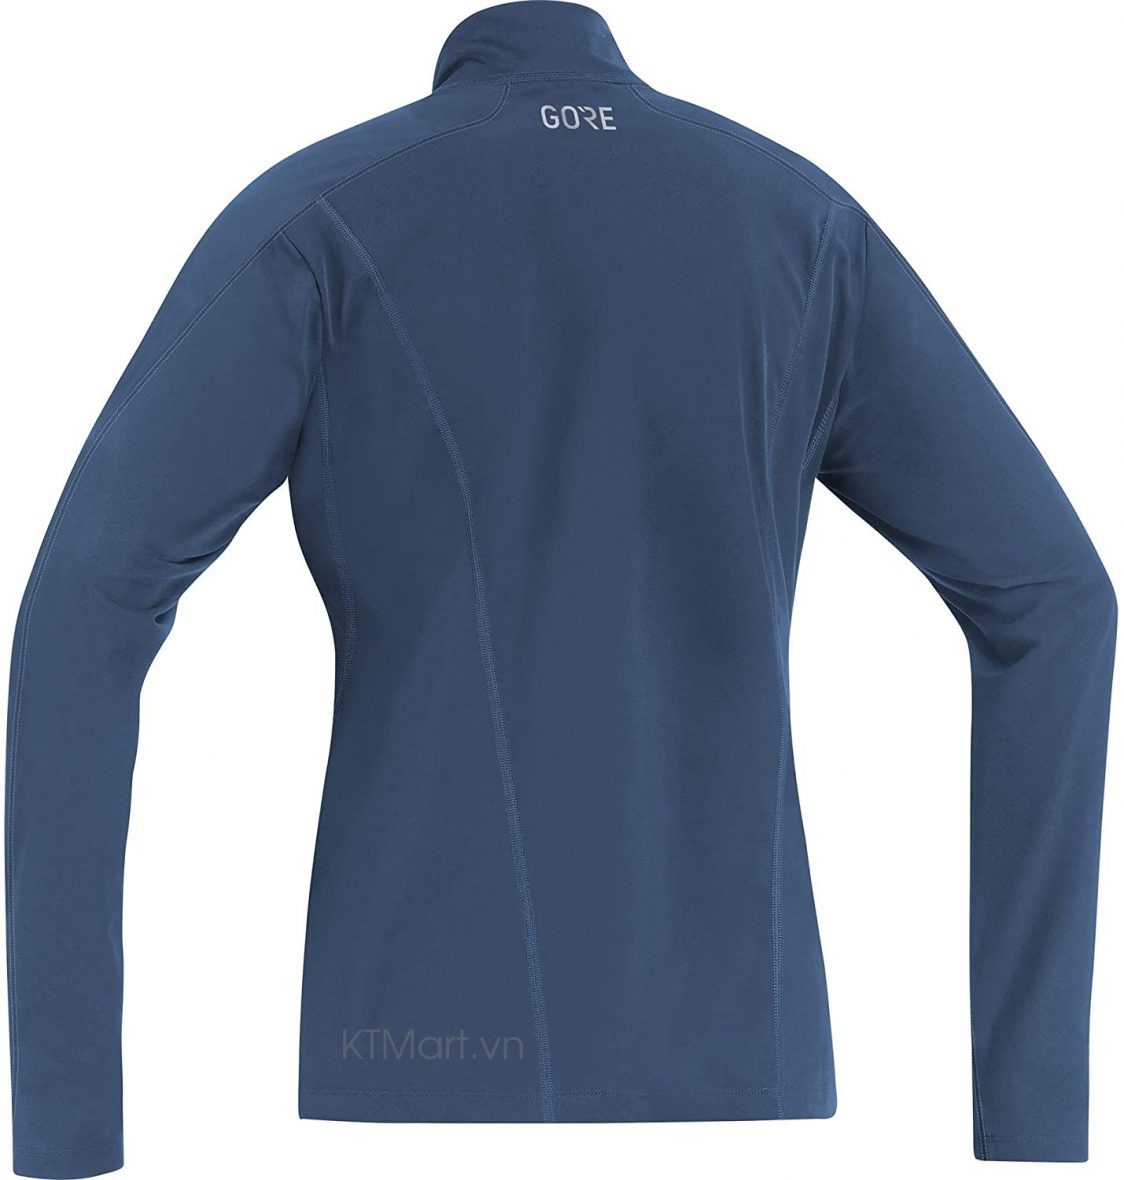 GORE Wear Women’s Breathable Long Sleeved Running Shirt 100345 ktmart 1